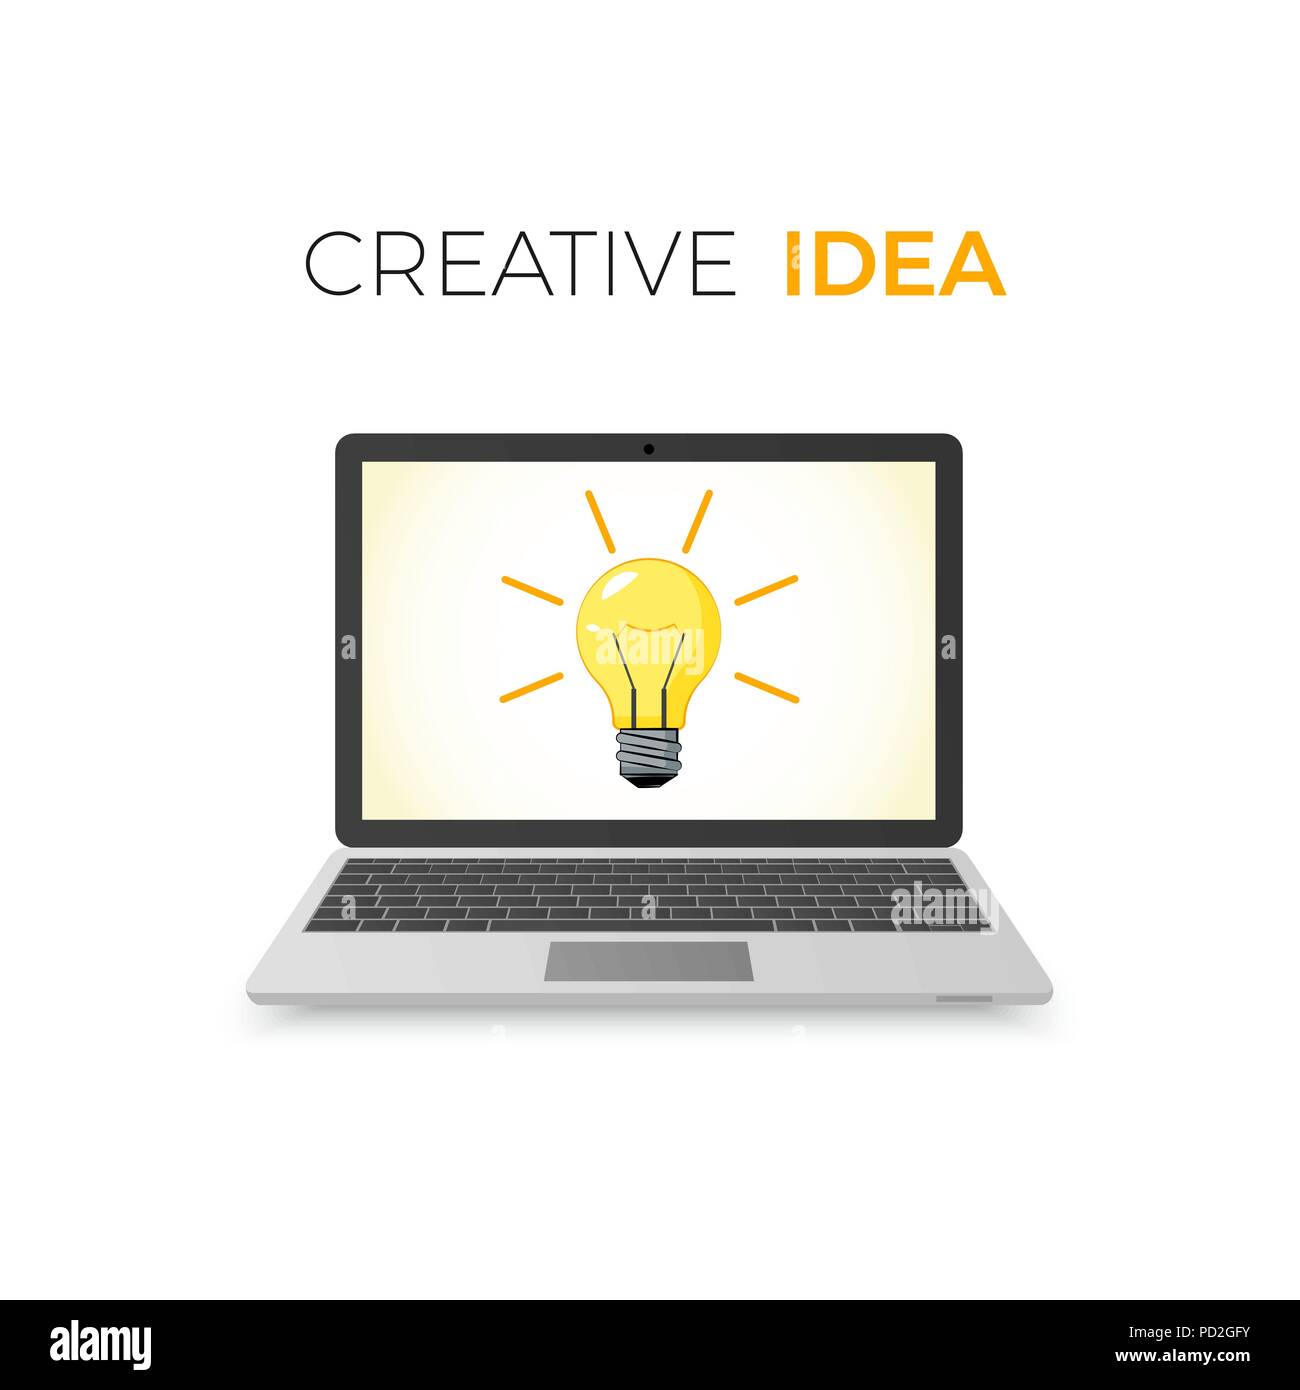 Kreative Idee Konzept. Business Solution. Auf dem Laptop Bildschirm Lampe. Vector Illustration auf weißem Hintergrund Stock Vektor